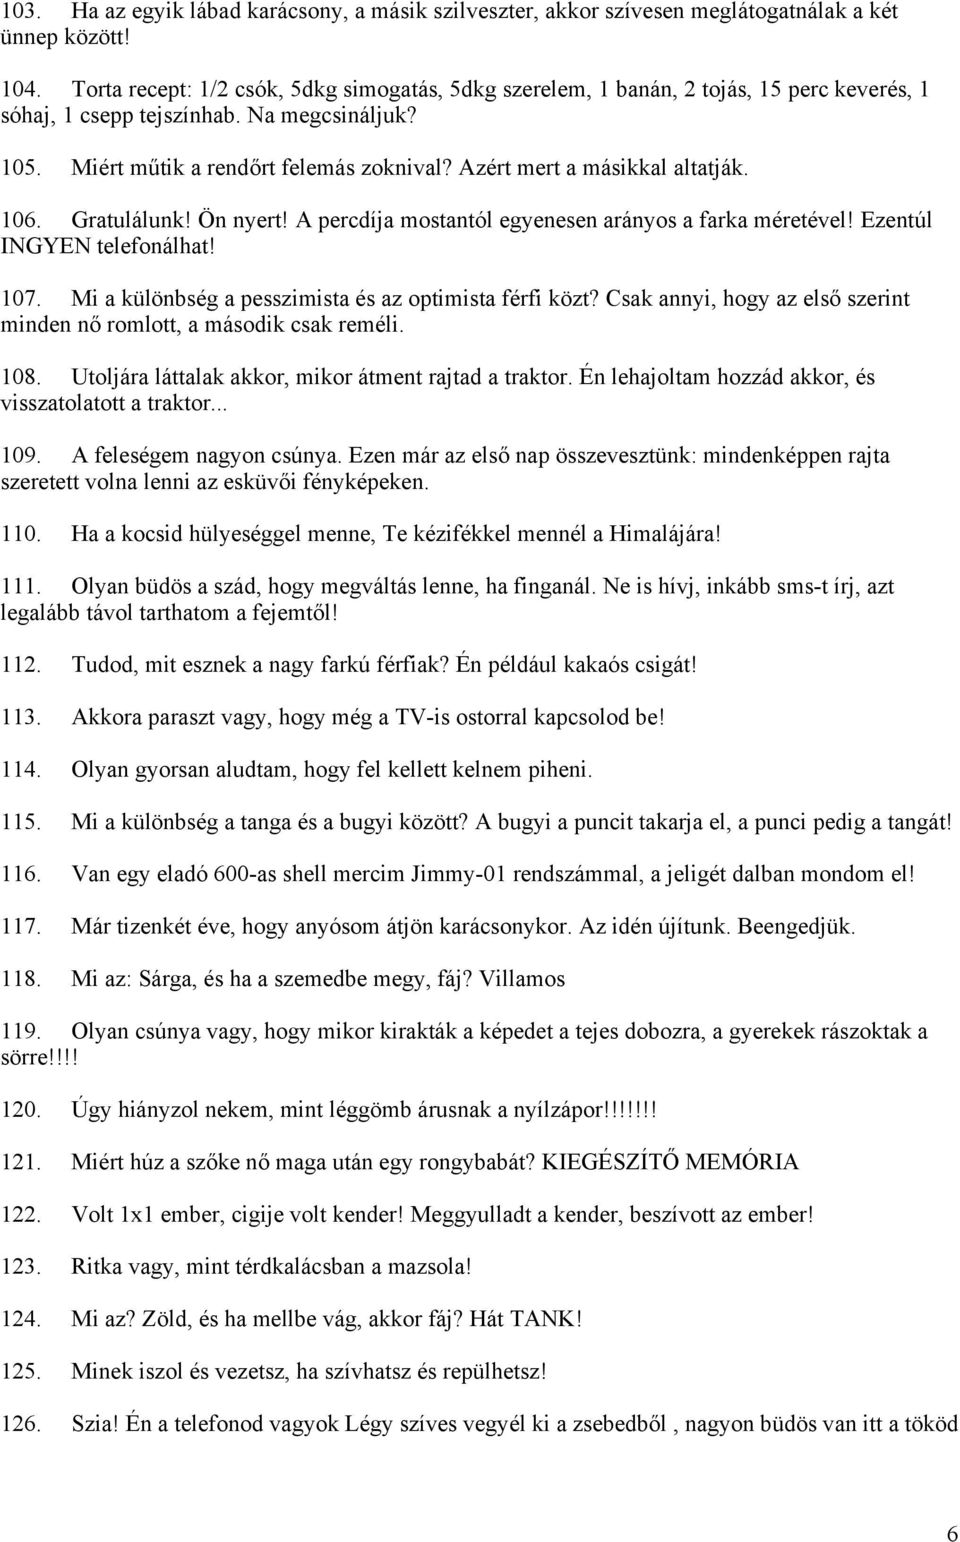 SMS adatbázis II. Vicces, pimasz és malac SMS-ek - - PDF Ingyenes letöltés